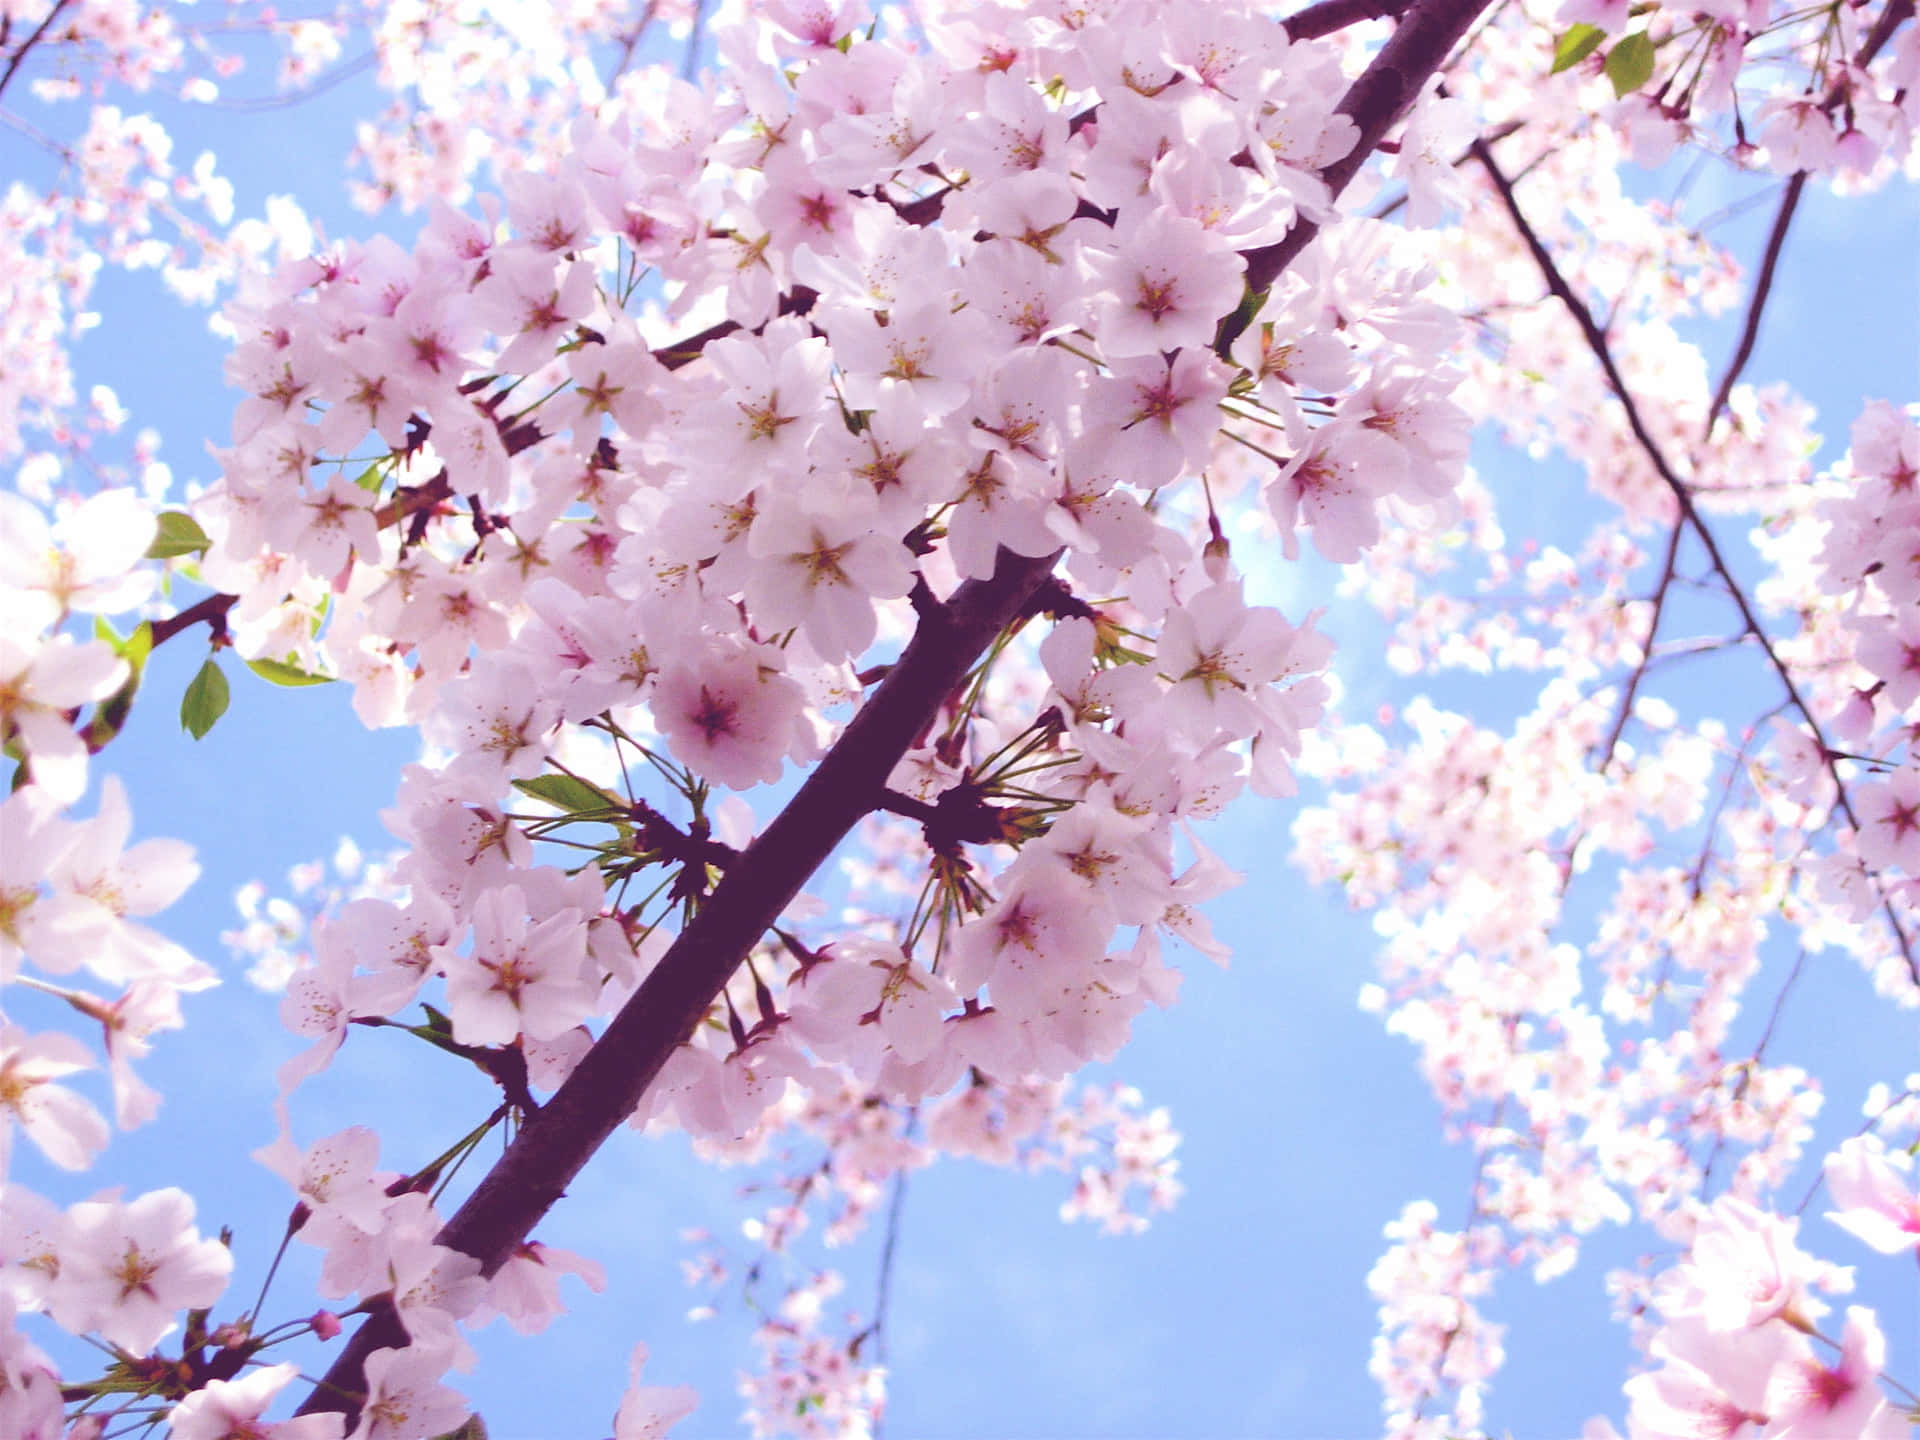 Capturea Alegria Da Primavera Com A Beleza Da Flor De Sakura Em Seu Papel De Parede Para Computador Ou Celular. Papel de Parede